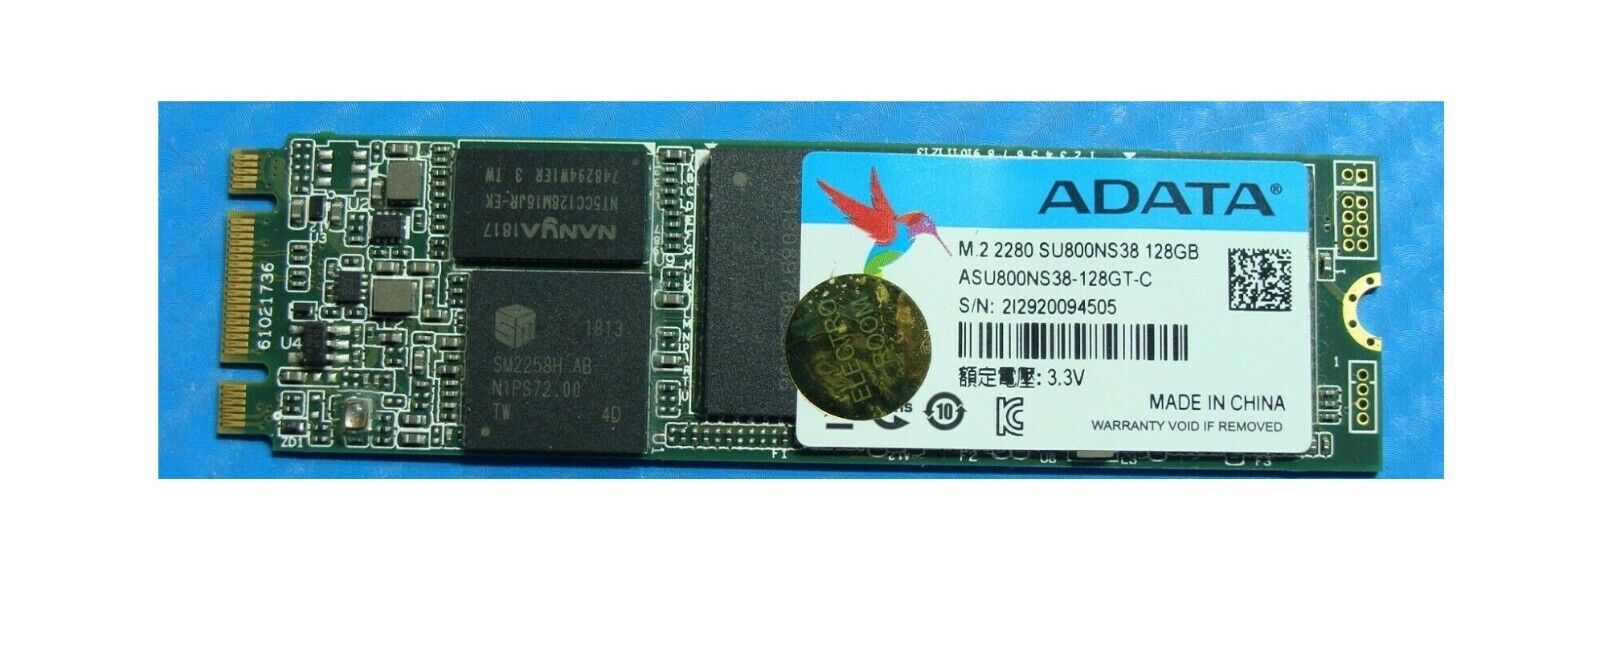 For HP Asus Acer Lenovo Dell Inspiron 15 5570 ADATA 128GB SATA M.2 SSD SU800NS38